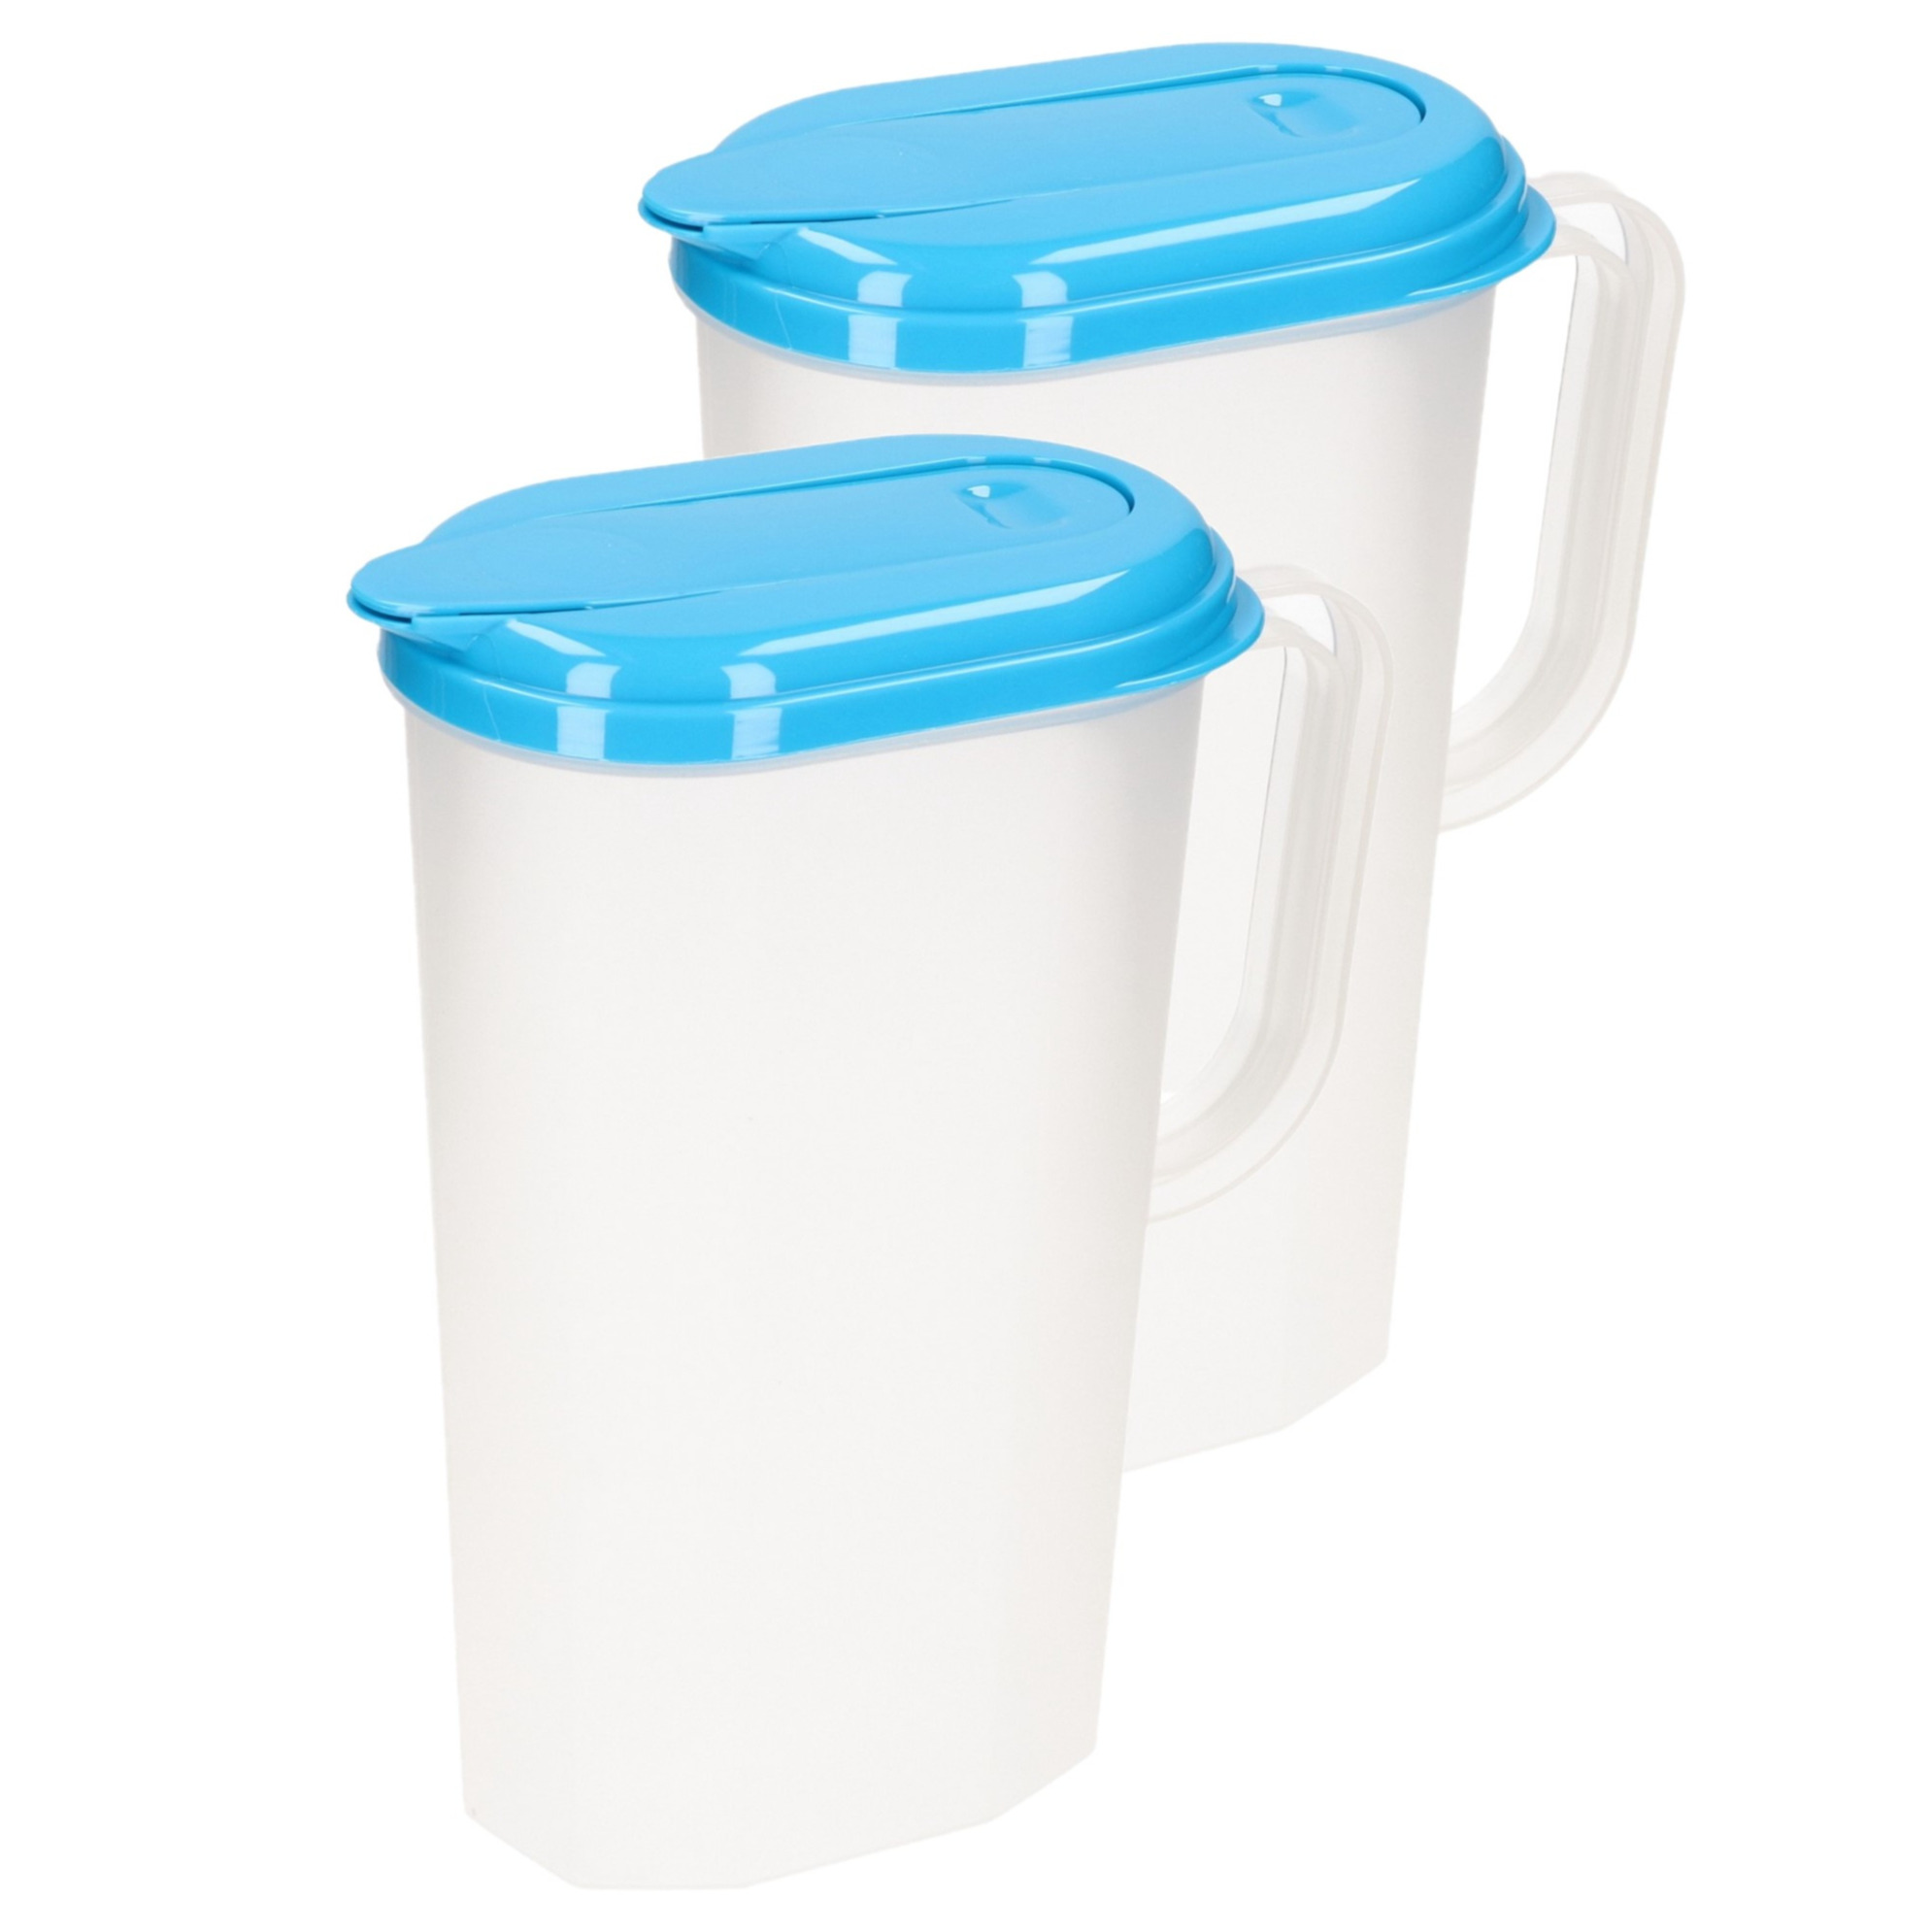 PlasticForte 2x stuks waterkan/sapkan transparant/blauw met deksel 2 liter kunststof -